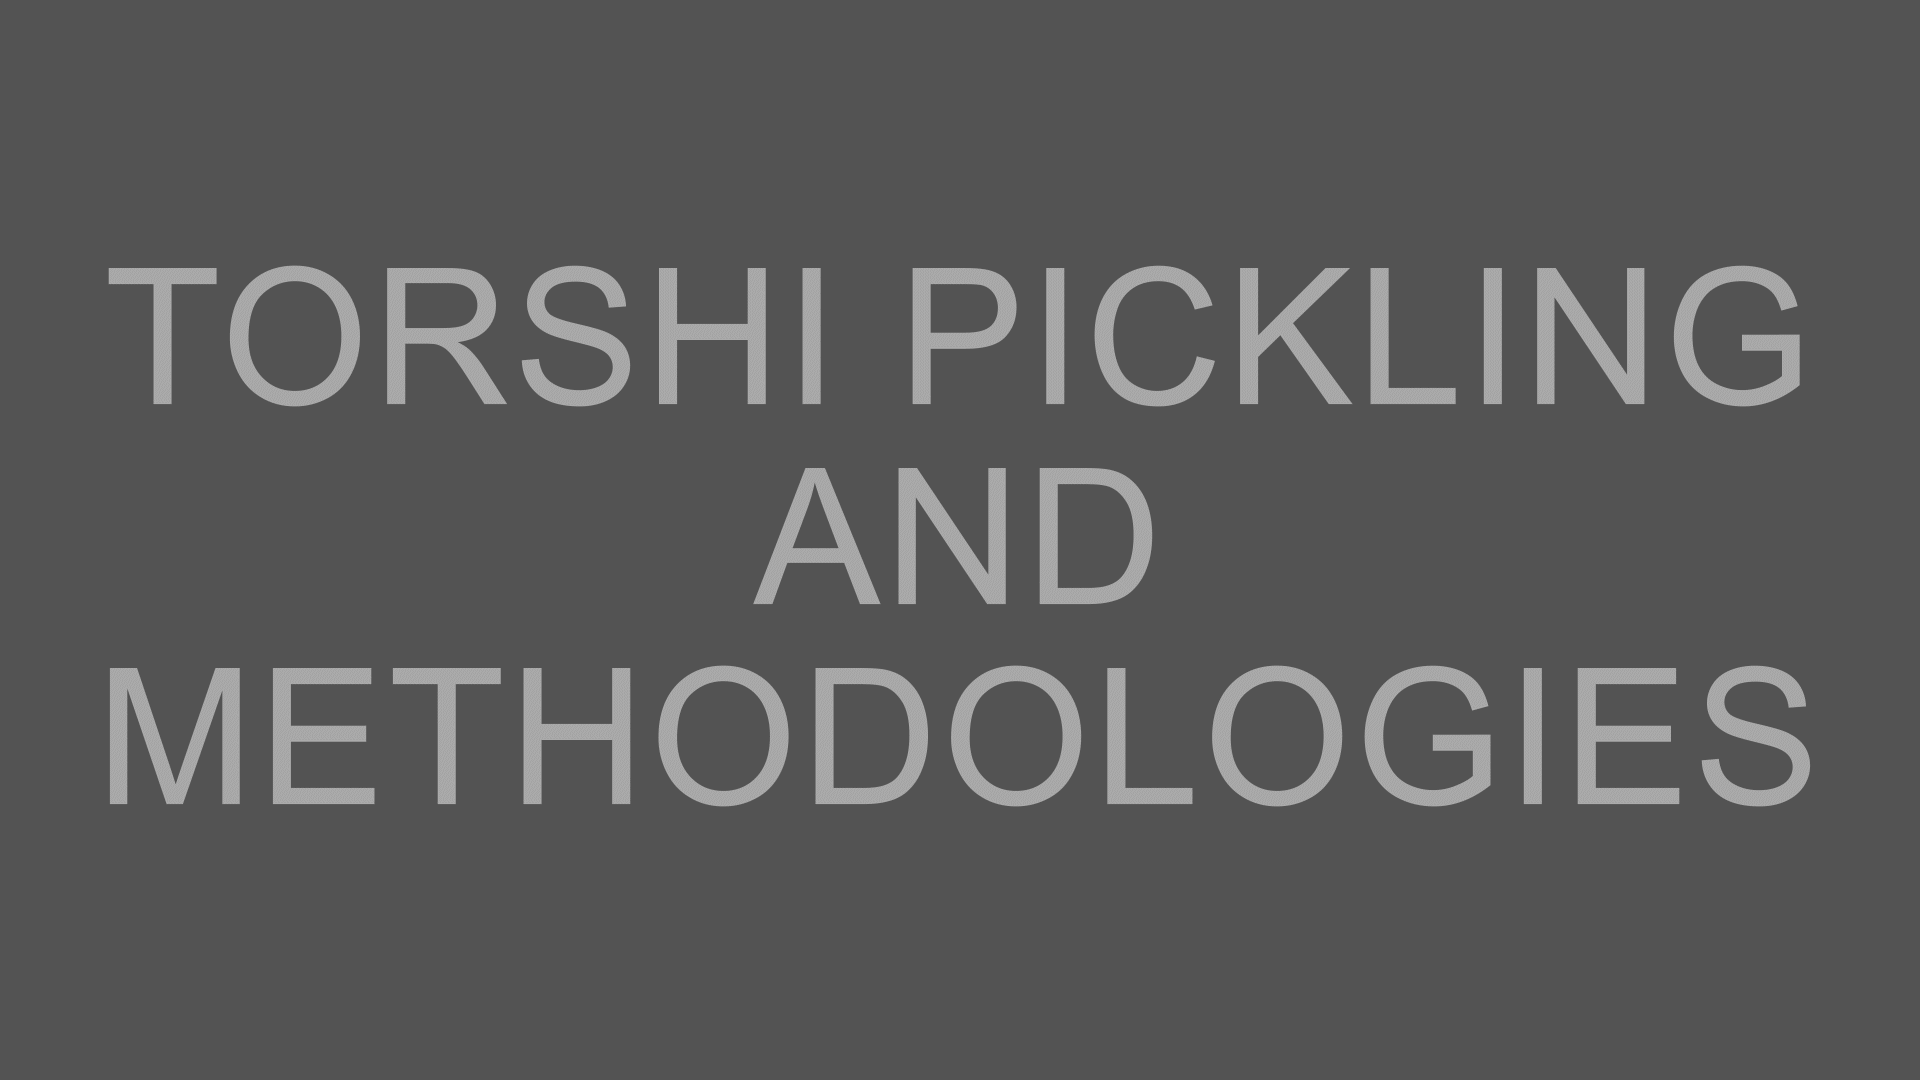 Torshi Pickling and Methodologies